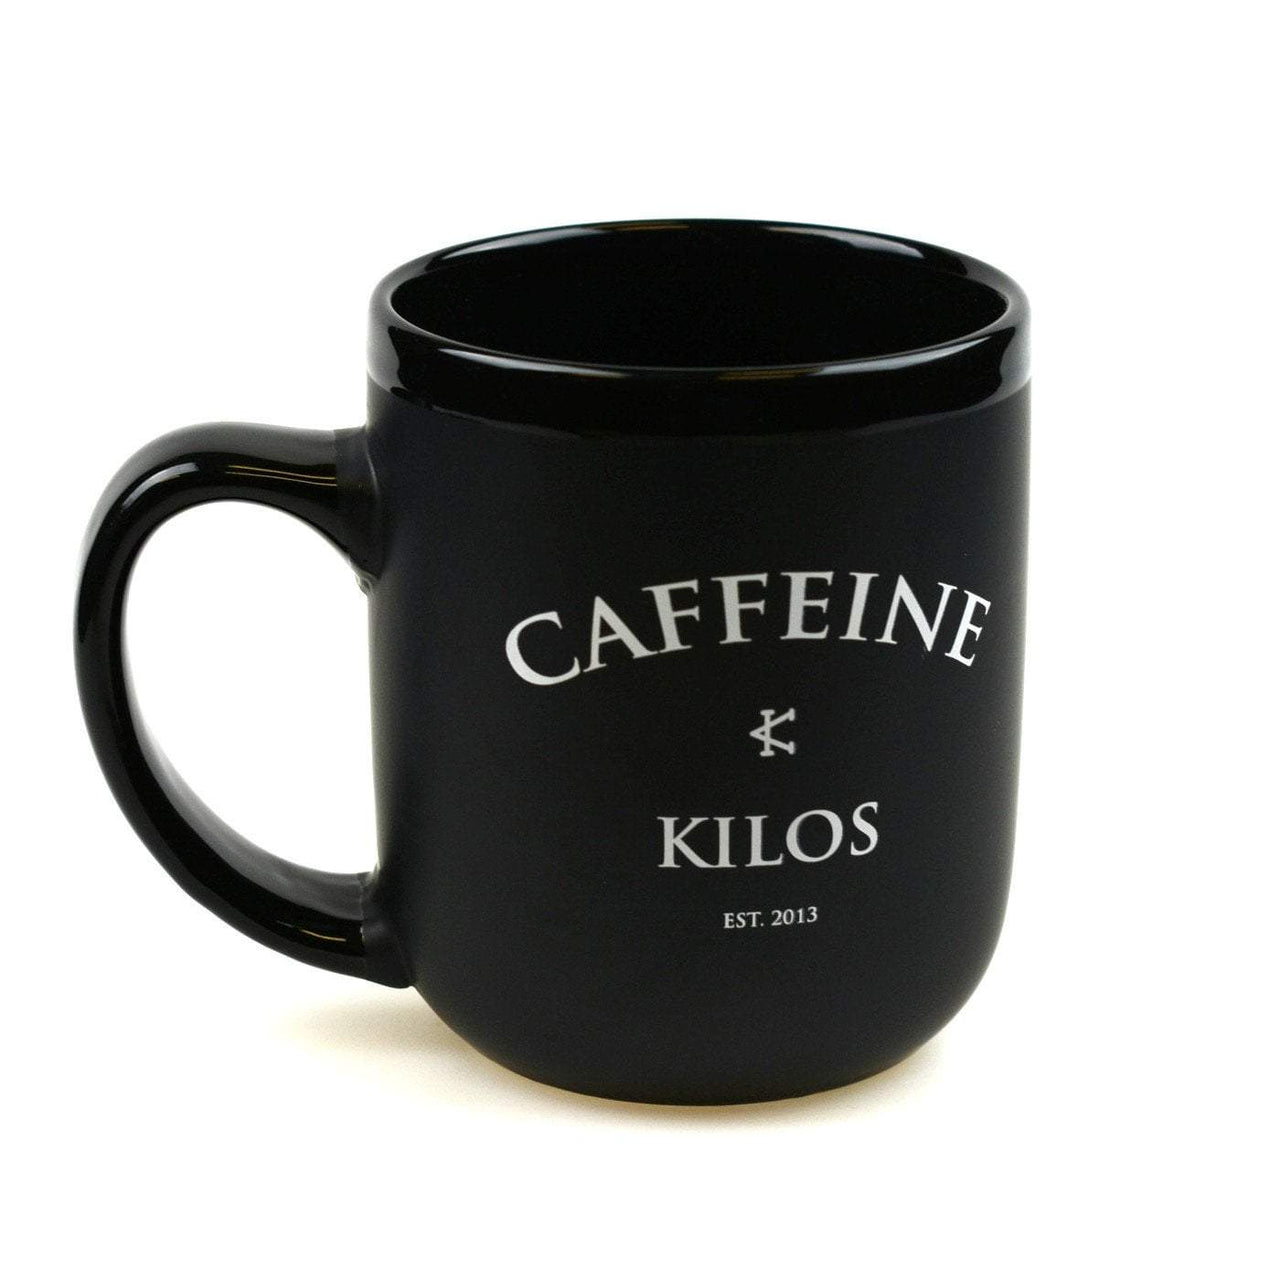 EXECUTIVE MUG - Caffeine and Kilos Inc